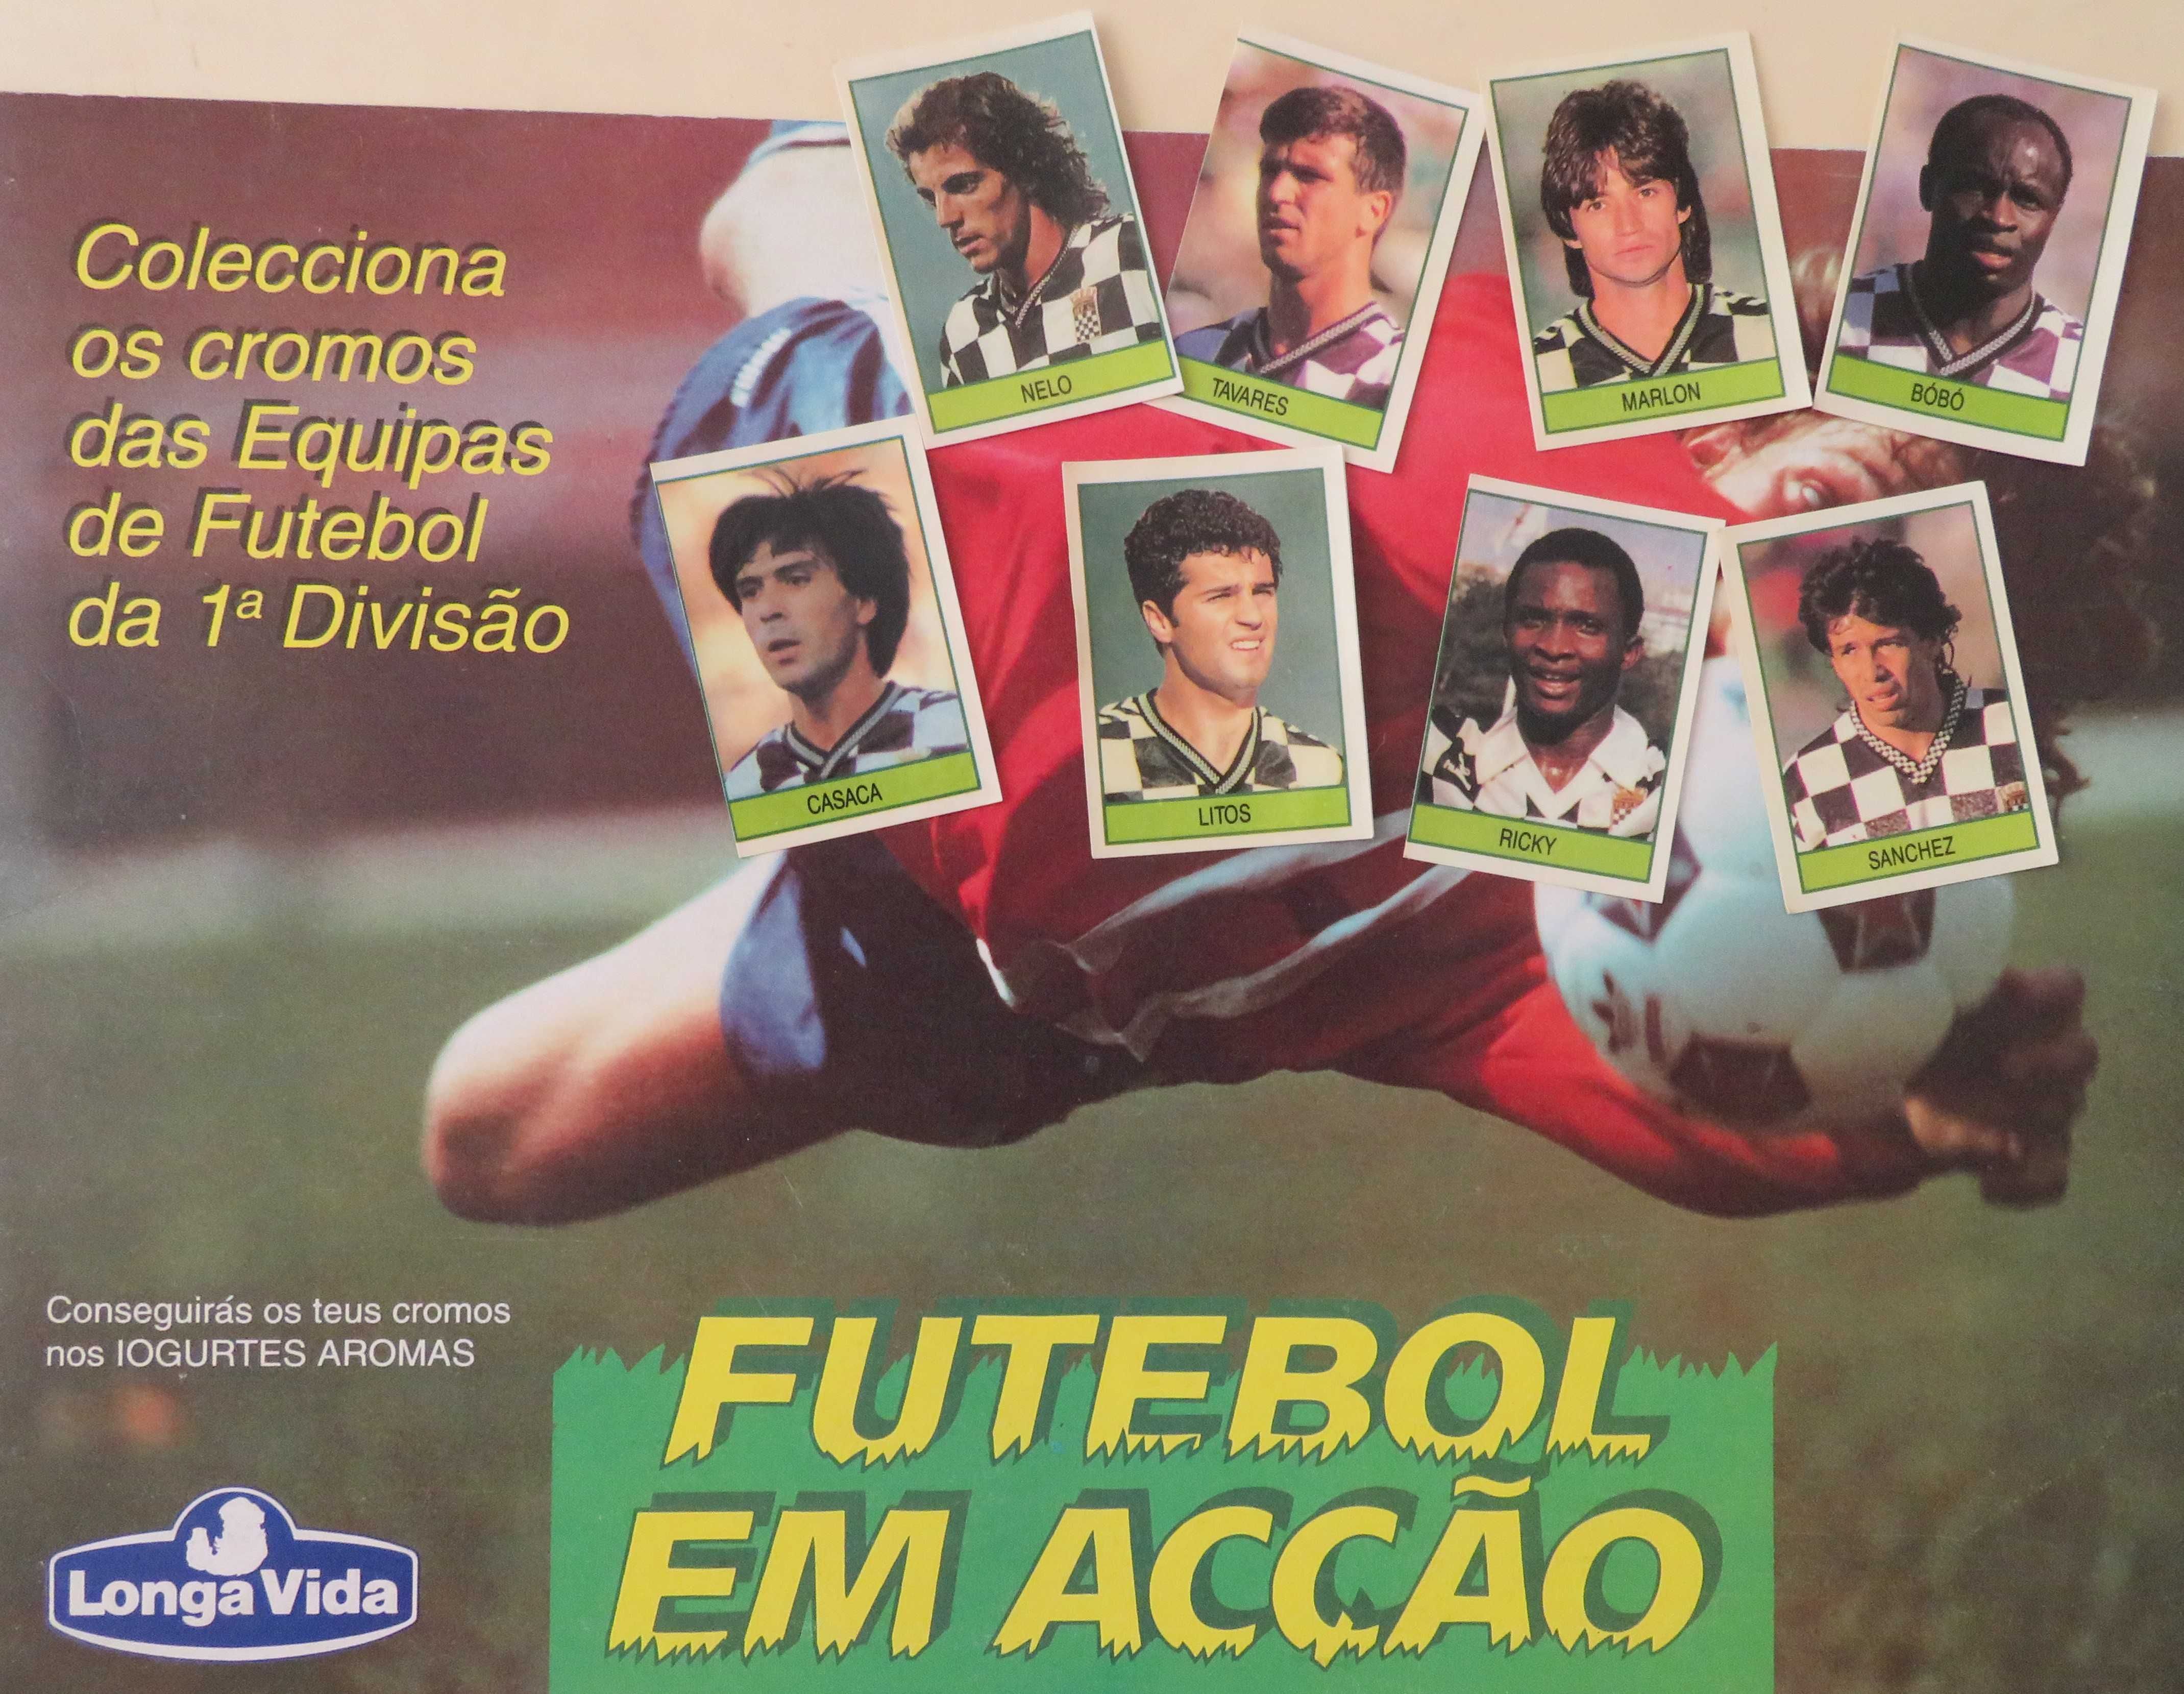 Cromos Futebol em ACÇÃO/LongaVida (Boavista)-Época 92/93